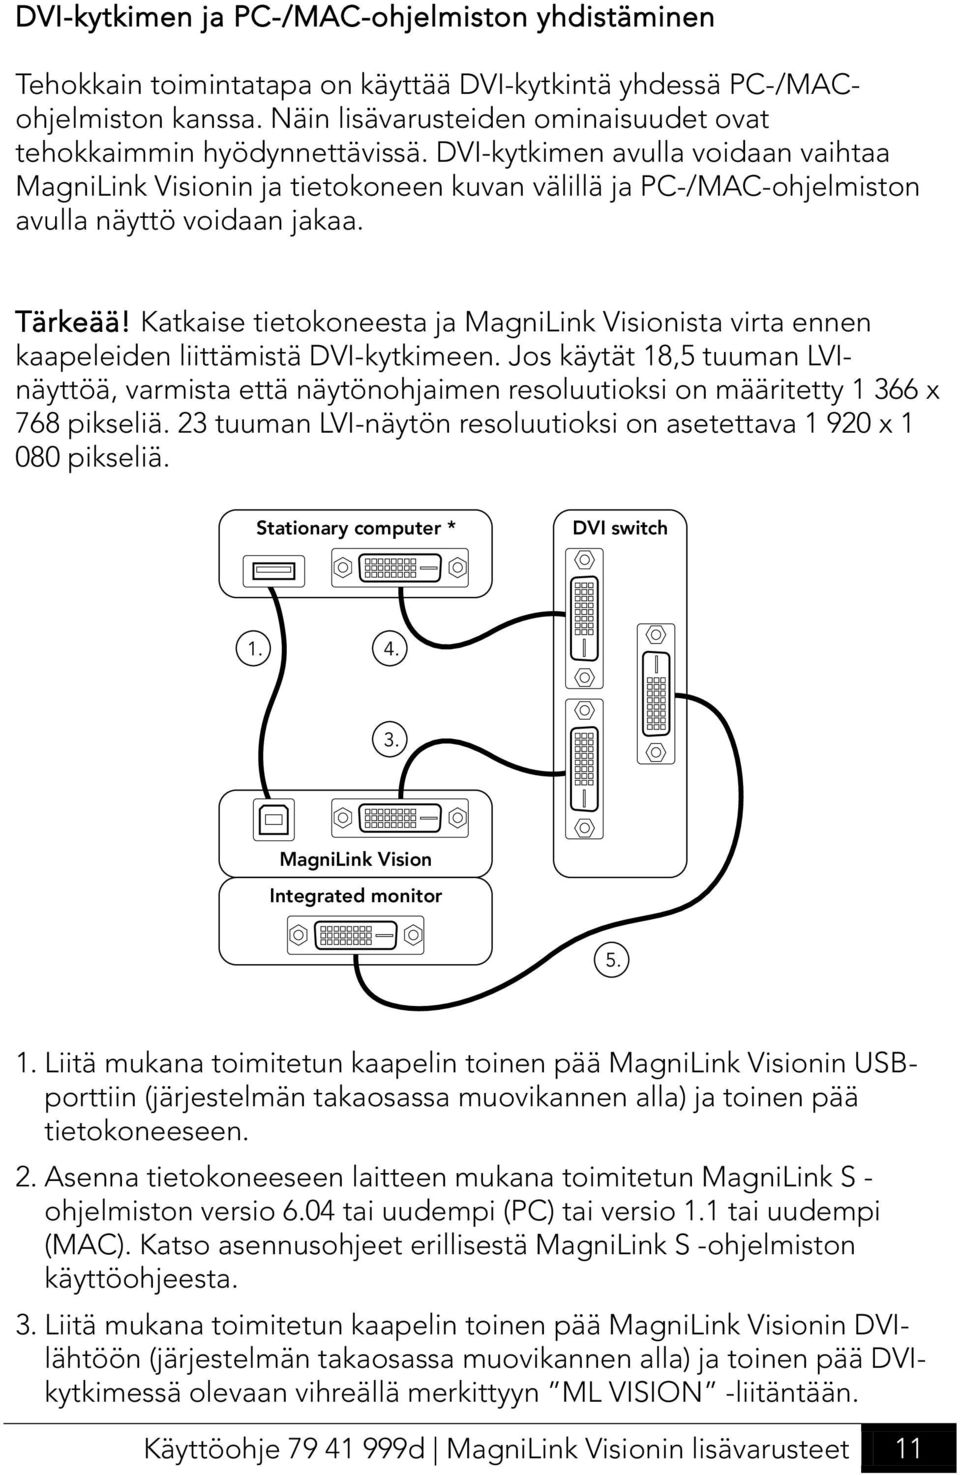 Katkaise tietokoneesta ja MagniLink Visionista virta ennen kaapeleiden liittämistä DVI-kytkimeen.